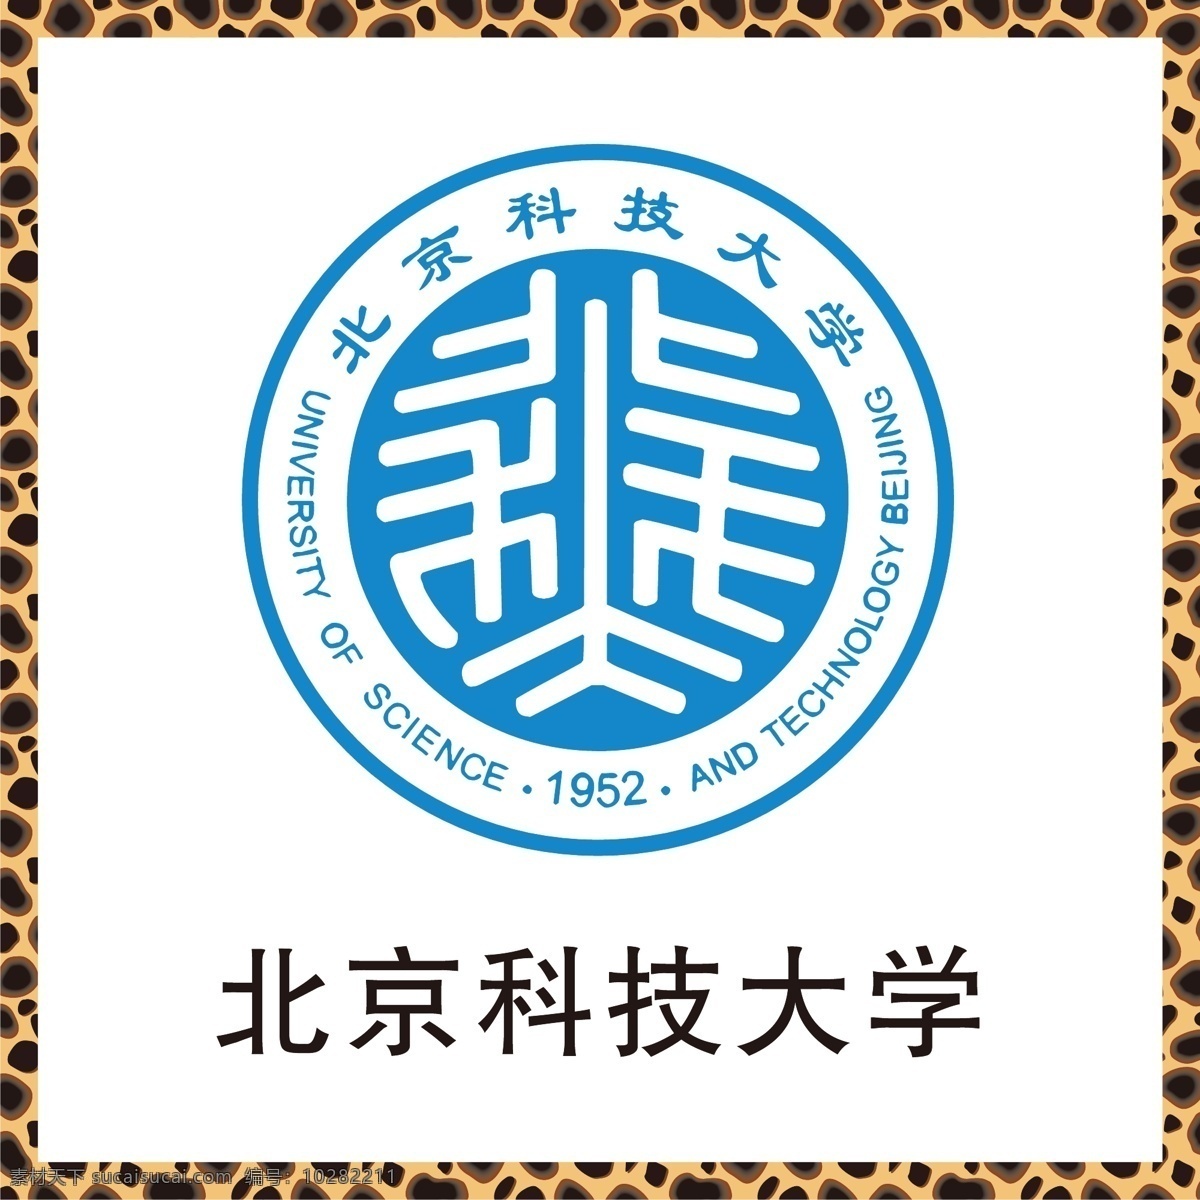 北京科技大学 大学标志 双一流大学 重点大学 公立大学 师范生 教师专业 911大学 285大学 logo 标志 矢量 vi logo设计